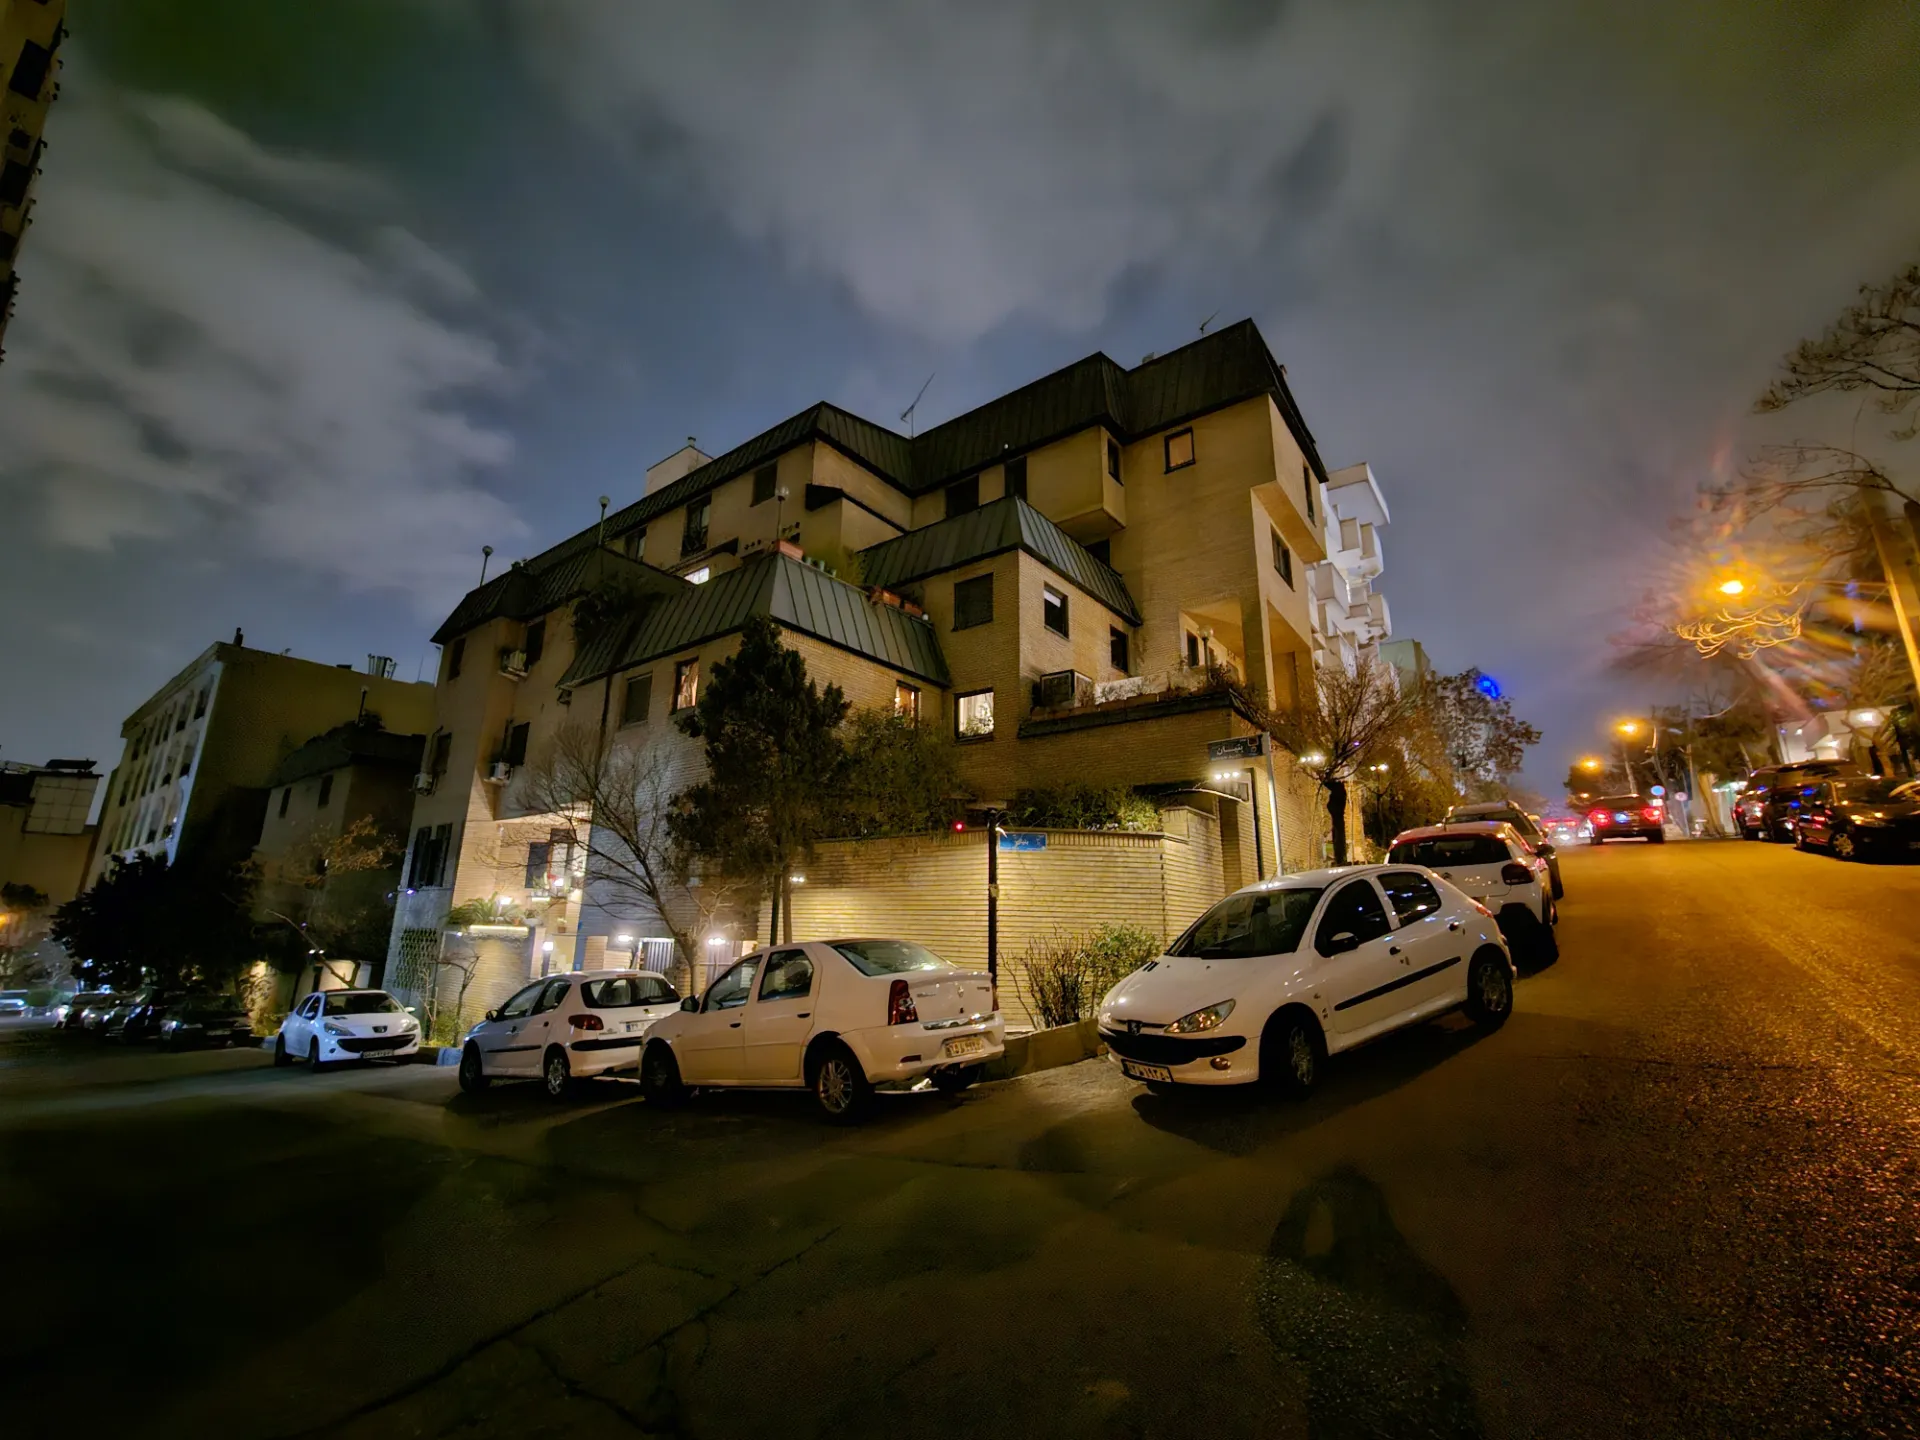 نمونه عکس ثبت شده با دوربین اولتراواید گلکسی S23 پلاس در محیط کم نور بیرونی از چند ساختمان و آسمان تاریک